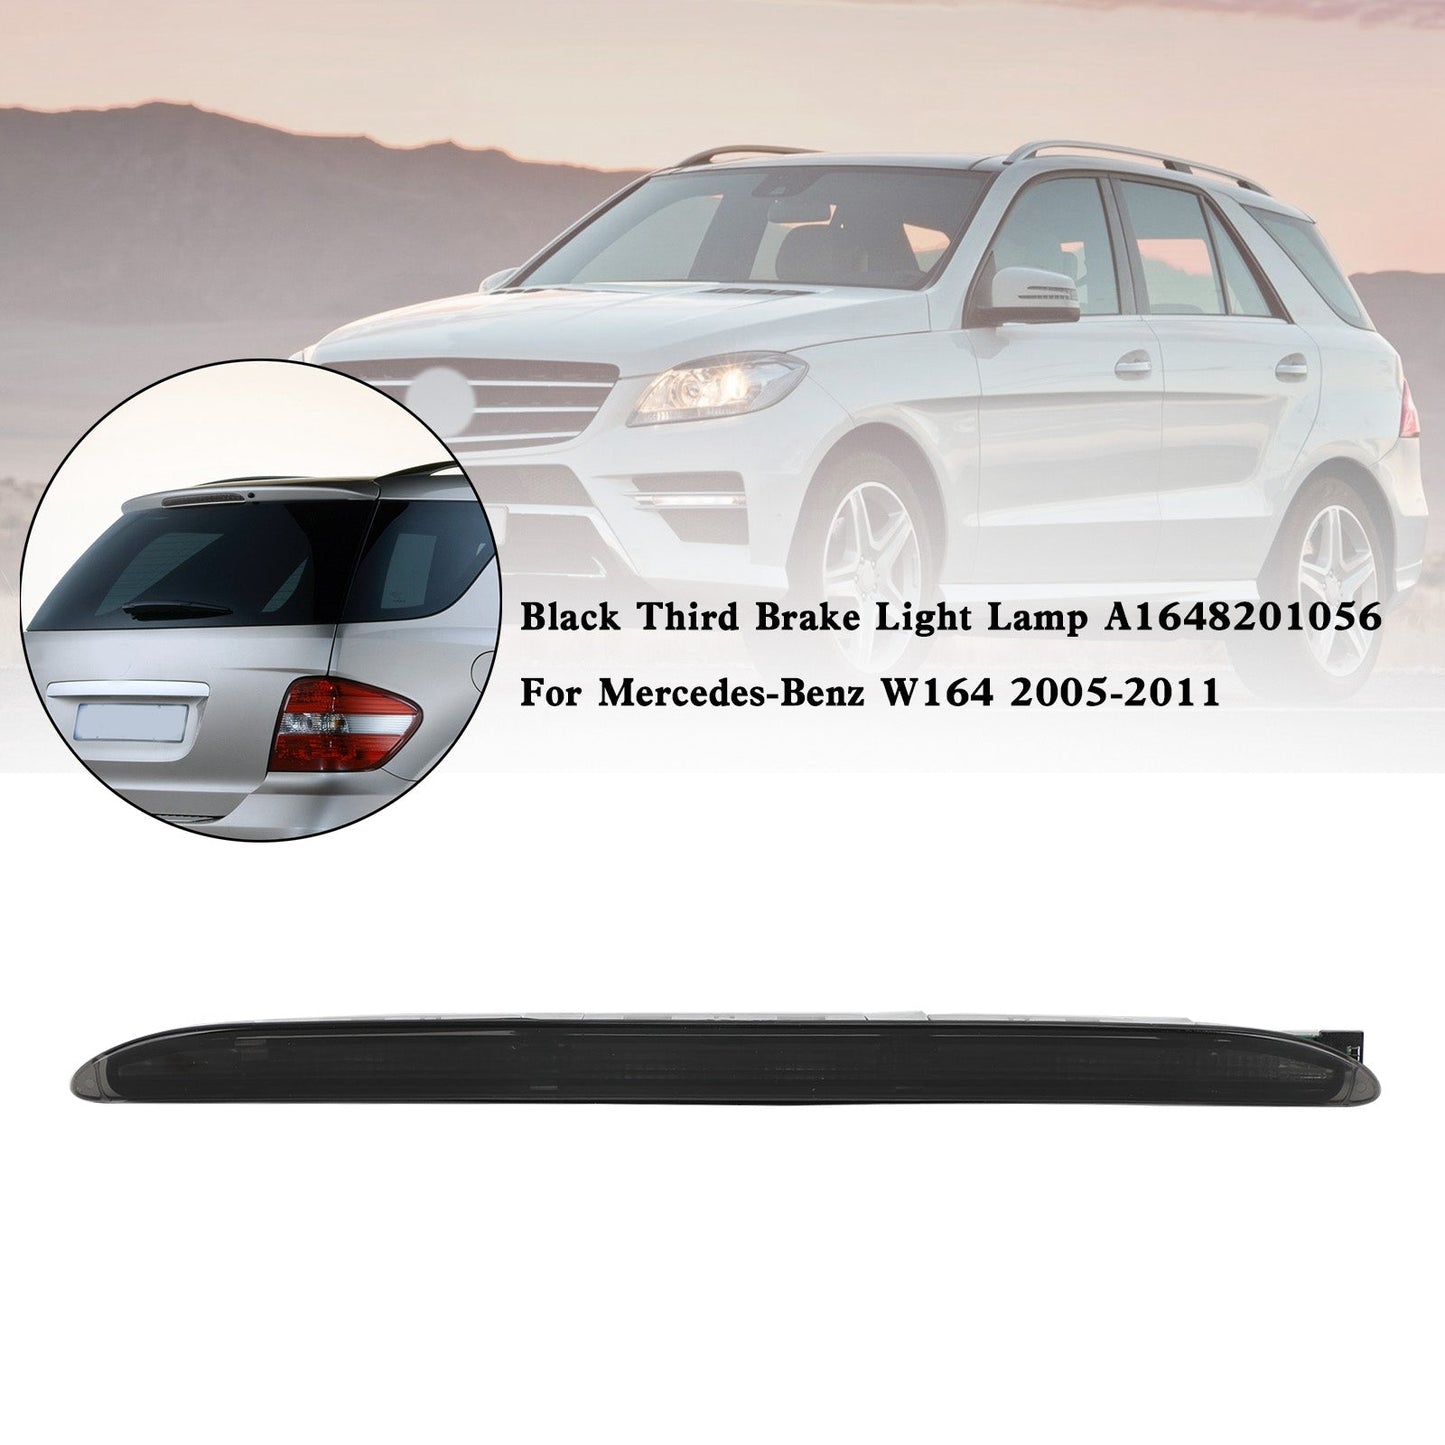 2005-2011 Mercedes-Benz W164 Black Third Brake Light Lamp A1648201056